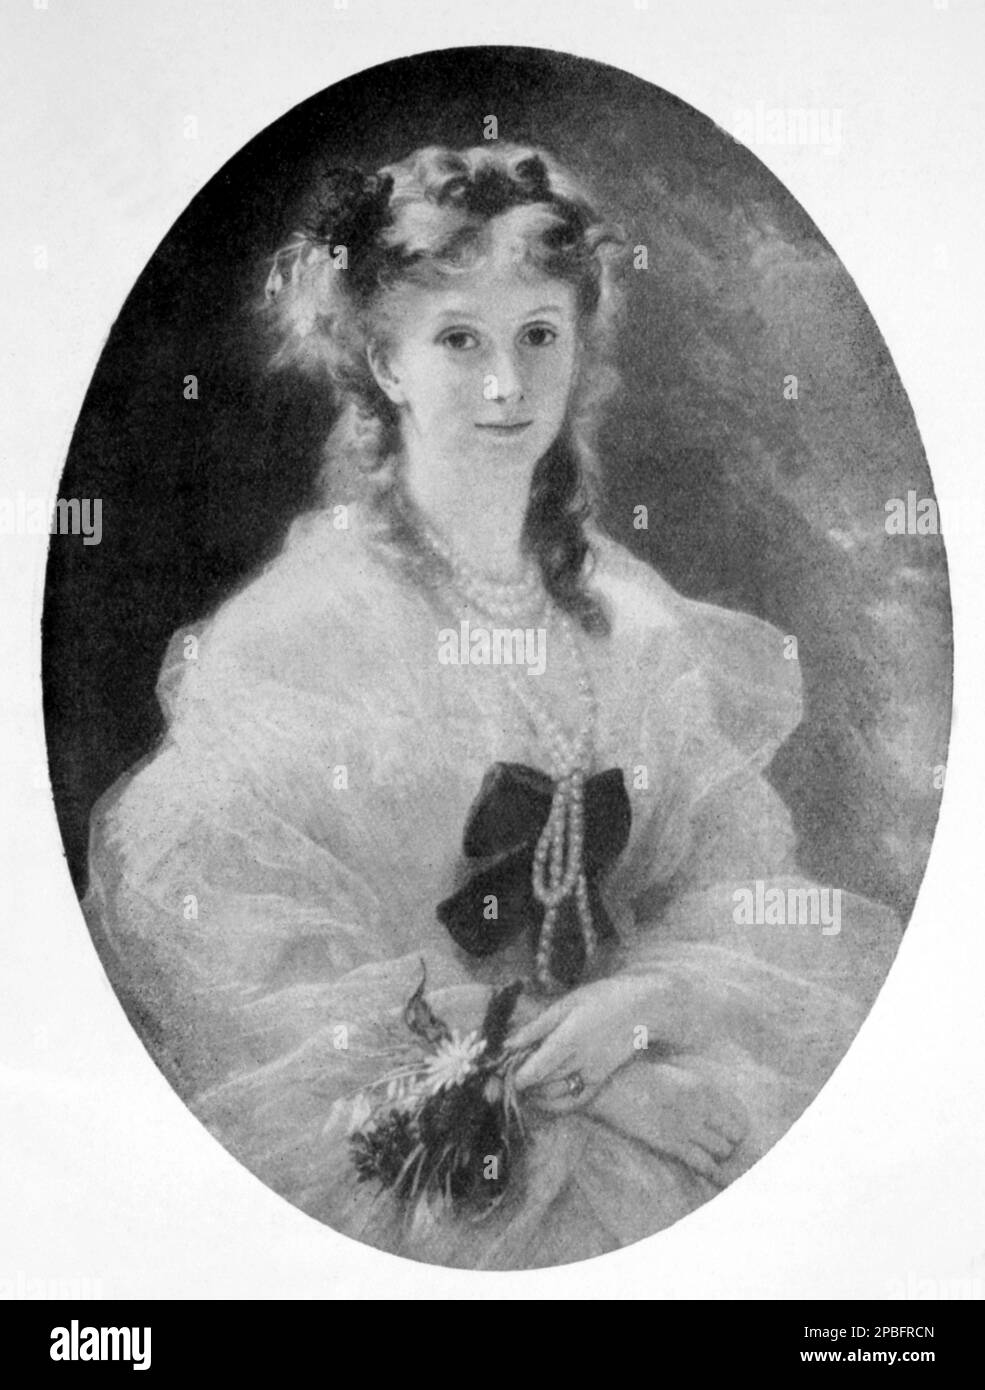 1857 Ca : die französische Herzogin DE MORNY , geboren als Prinzessin Sophie Troubetzkoi ( 1838 -1896 ), natürliche Tochter des russischen Zaren Nicholas I. War die Königin des Pariser Lebens während des Zweiten Reiches von Napoleon III. Bonaparte . Verheiratet mit Herzog Charles Auguste Louis Joseph Demorny ( 1811 - 1865 ) , Politiker und Halbbruder von Kaiser Napoleon III . Porträt von Maler Franz Xaver Winterhalter ( 1805 - 1873 ) - FRANCIA - ADELSGESCHENK - NOBILI - Nobiltà - FOTOSTORICHE - GESCHICHTSFOTOS - Perlenkette - collana di perle - perla --- Archivio GBB Stockfoto